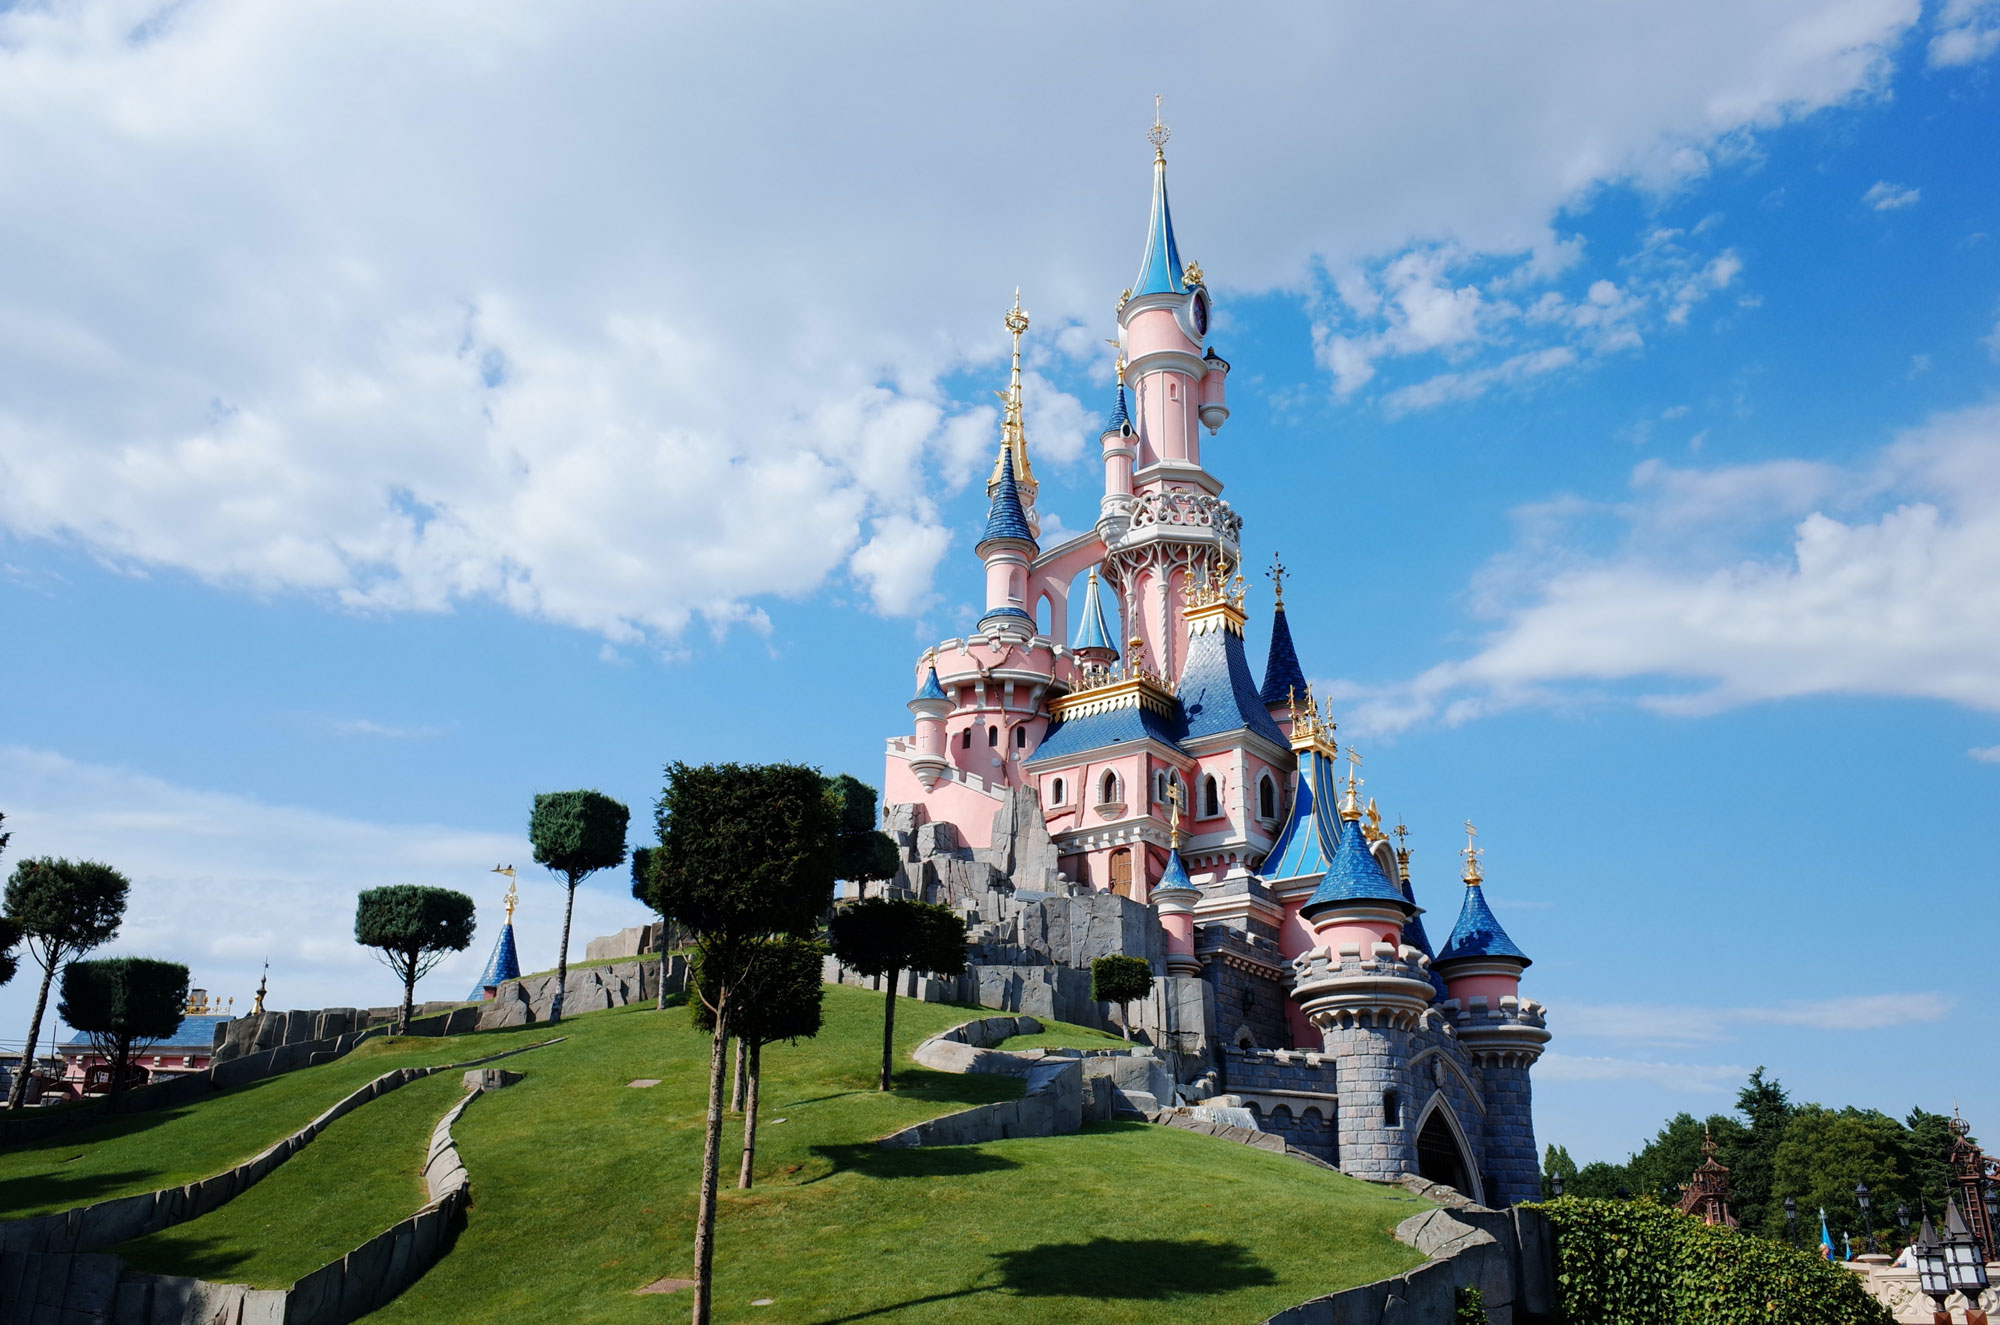 Het Kasteel van Doornroosje is helemaal opgeknapt en klaar voor de 30e verjaardag van Disneyland Paris.